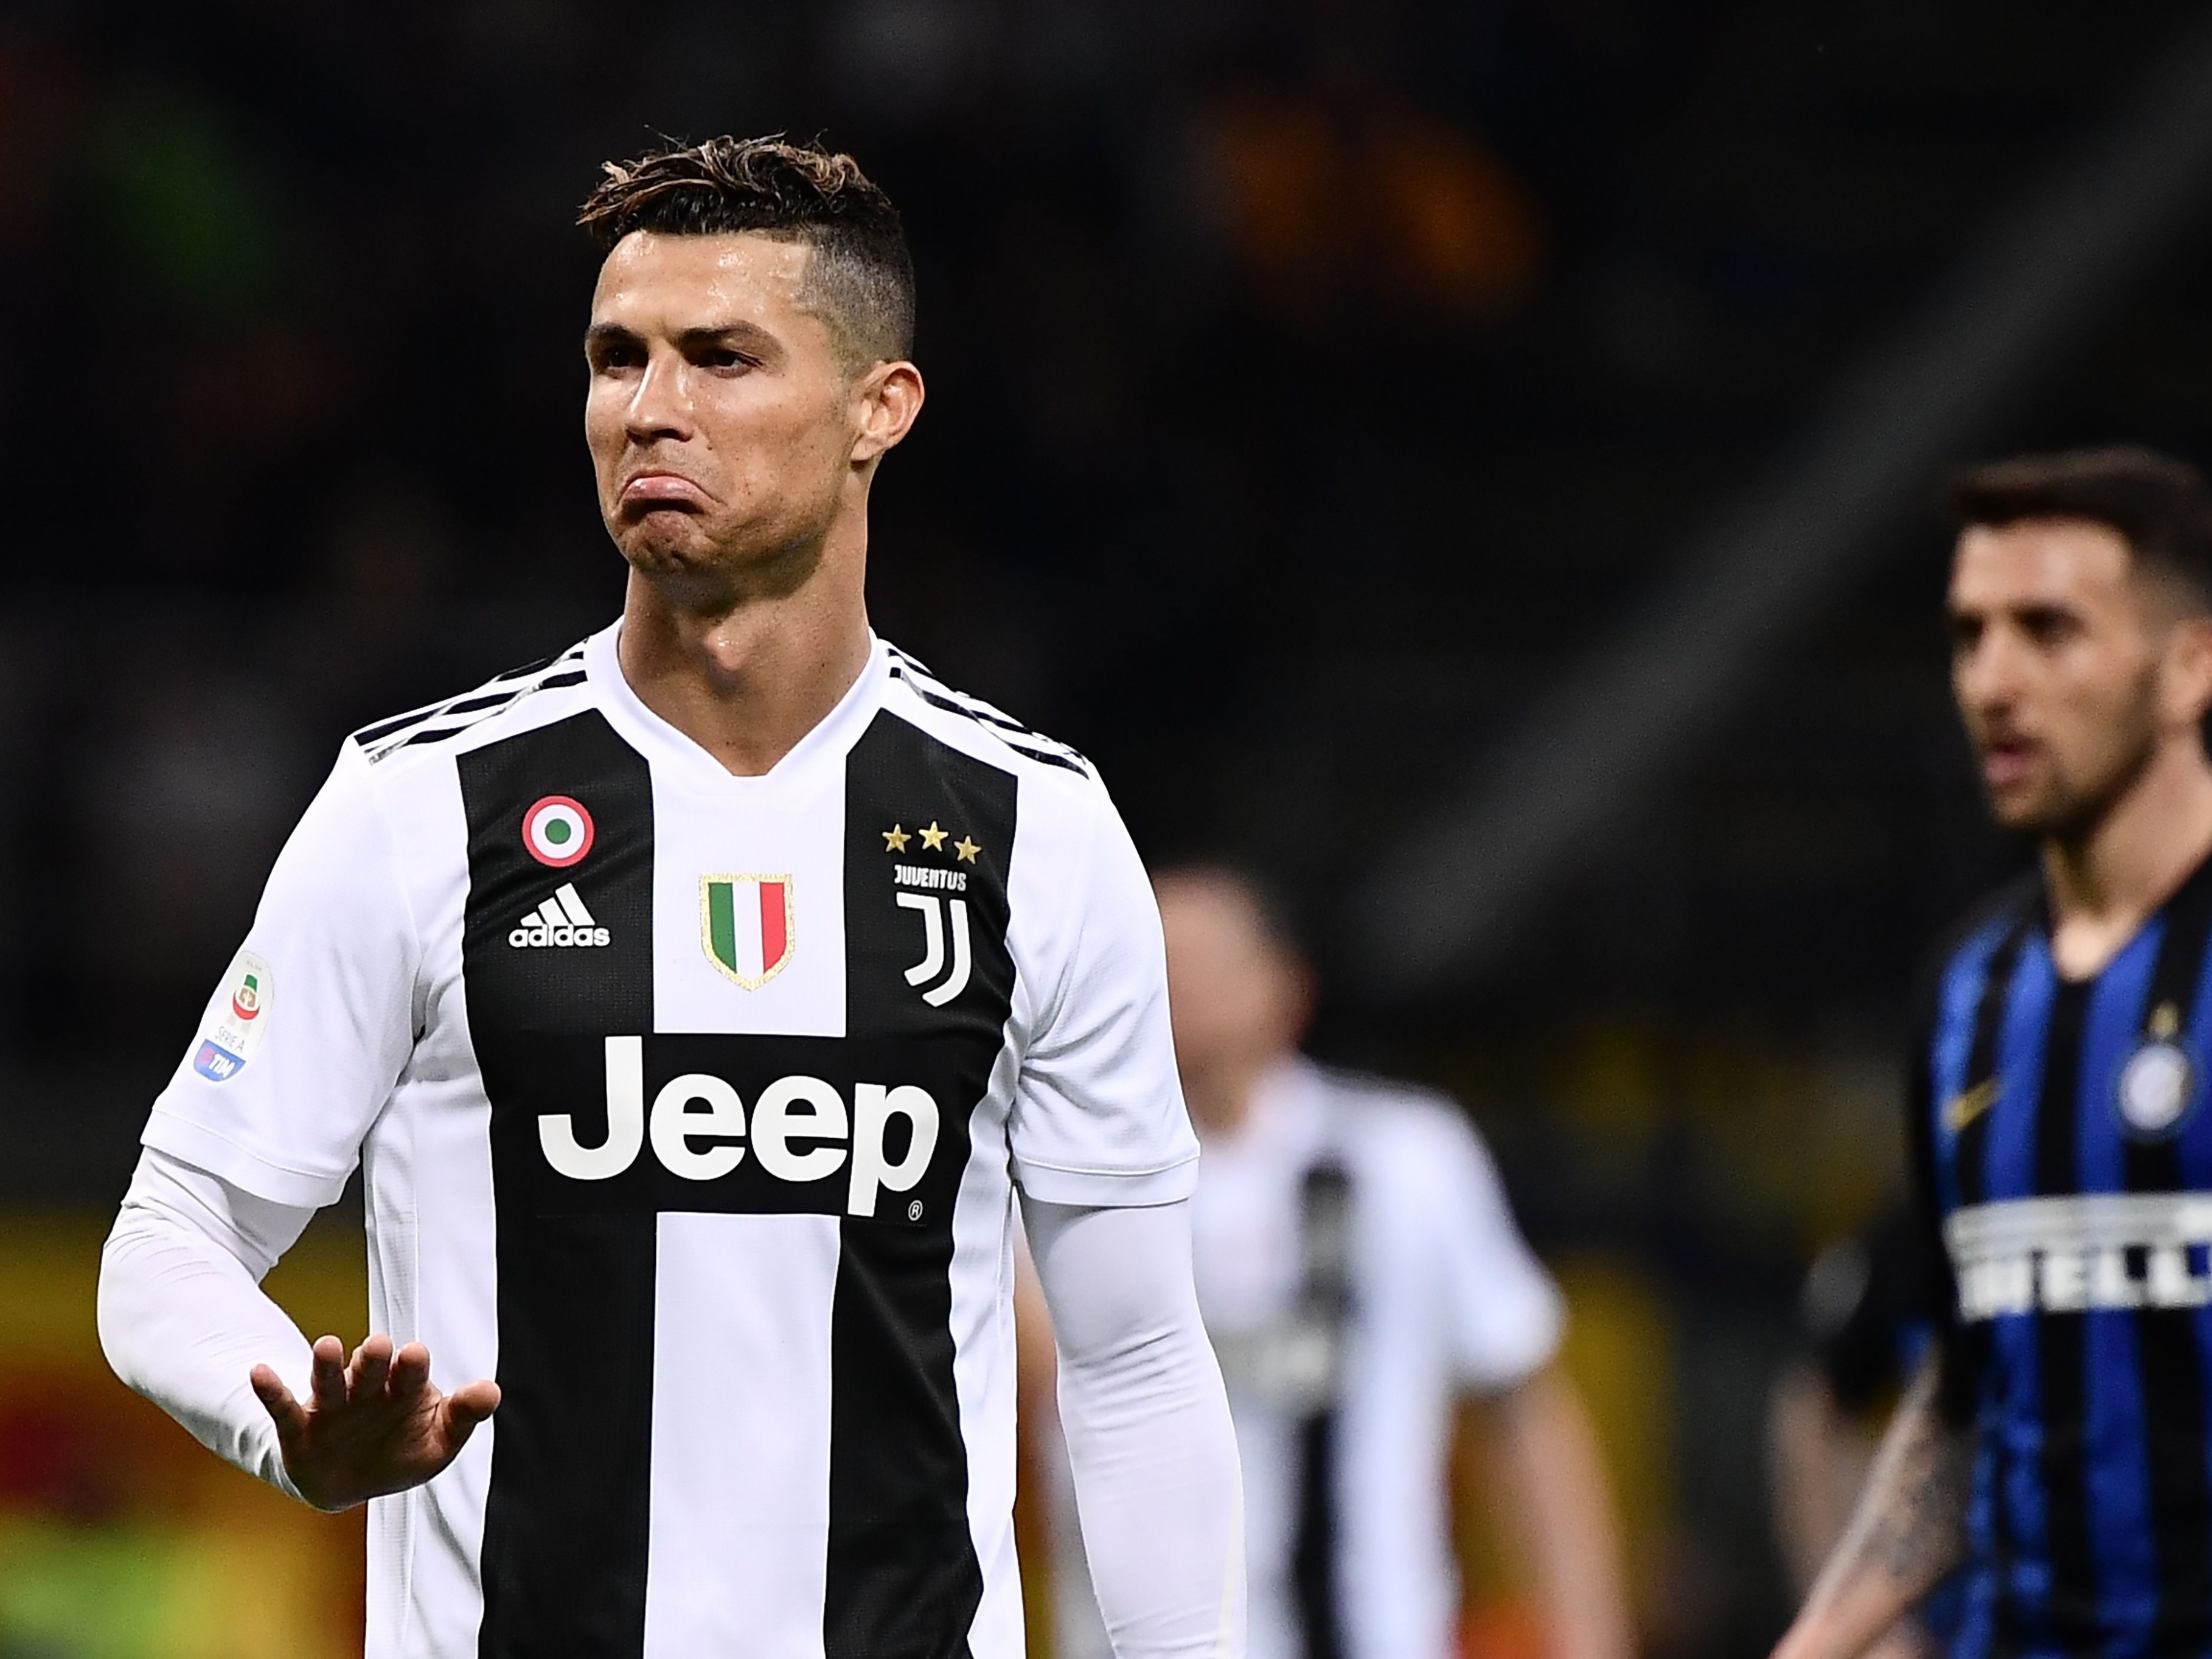 Contra a hegemonia da Juventus: Campeonato Italiano começa neste sábado